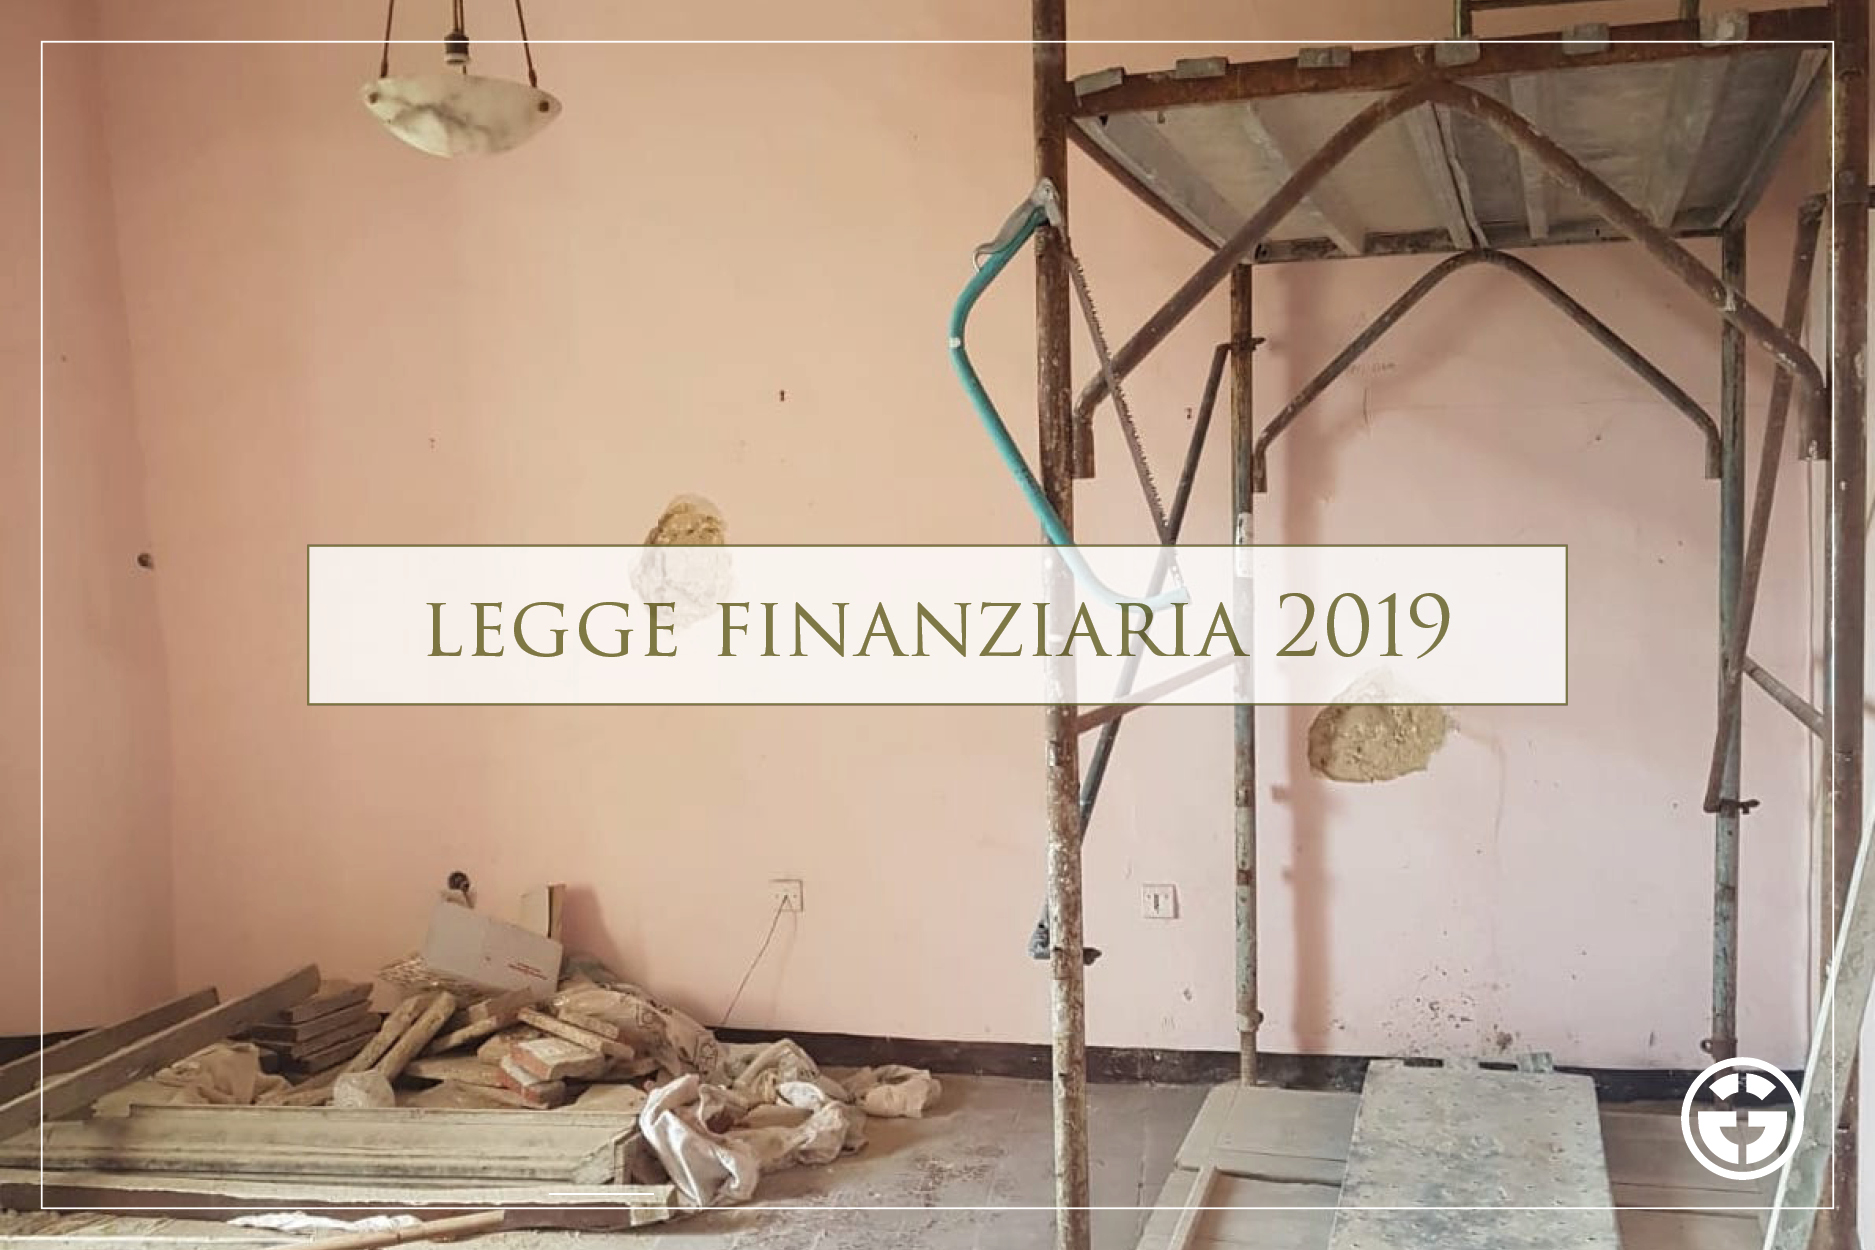 Finanziaria 2019 ed attività edilizia: confermate le agevolazioni fiscali